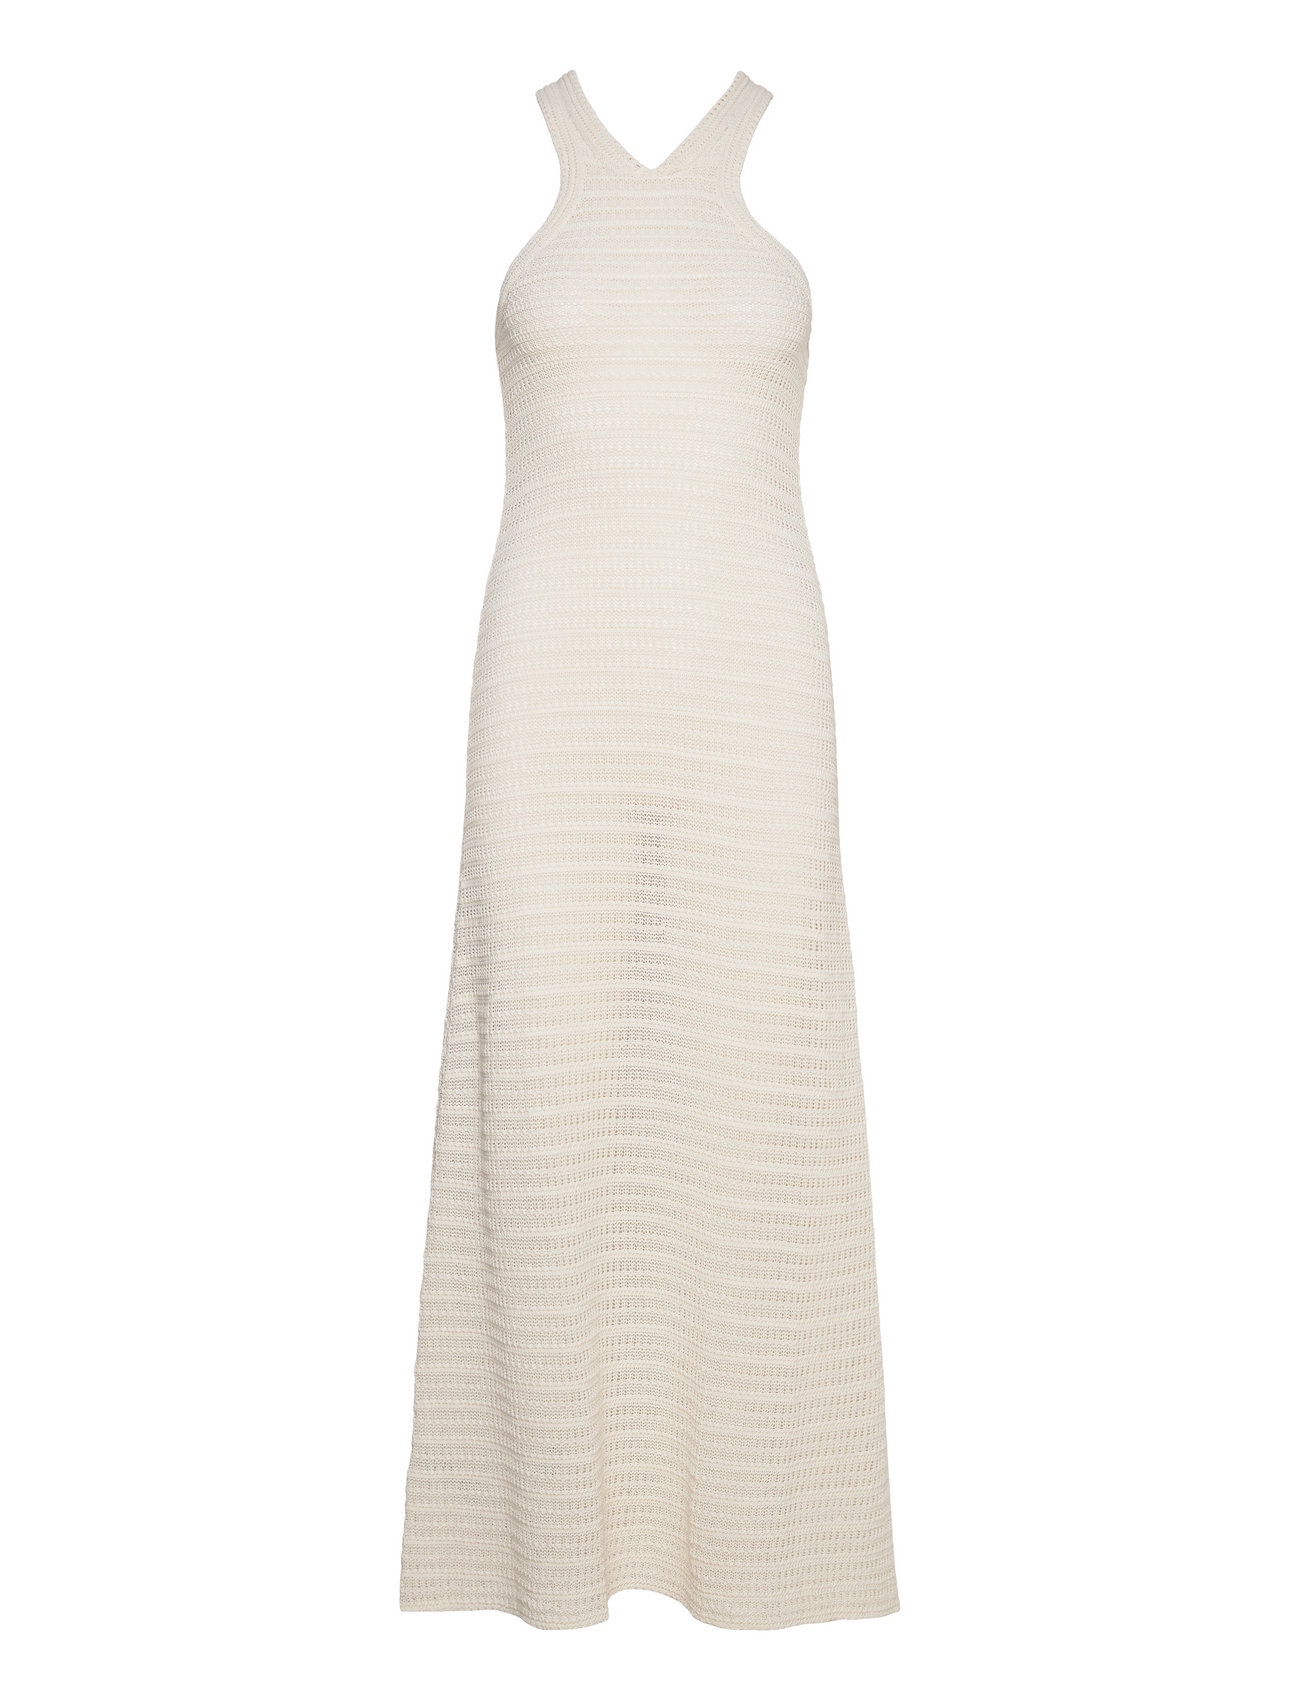 Halter-Neck Crochet Dress Maxiklänning Festklänning Cream Mango